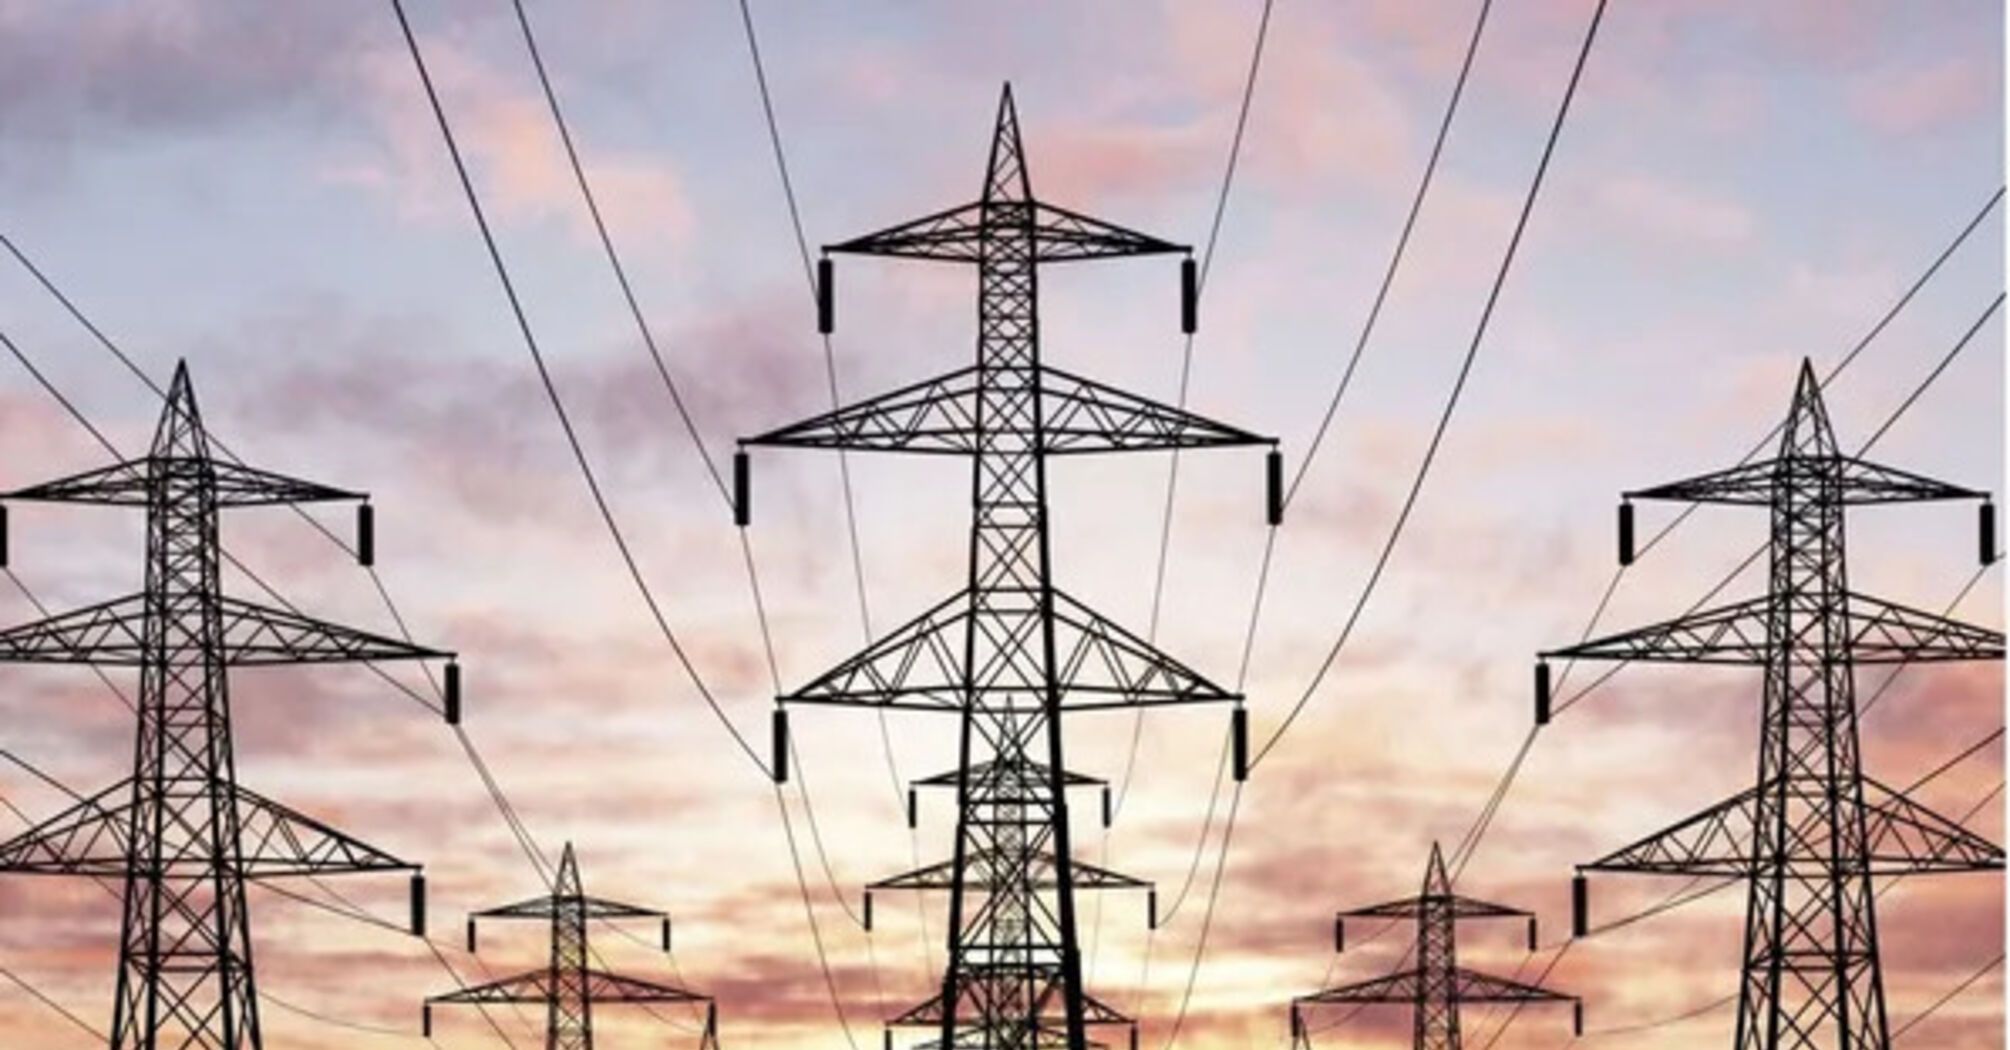 Отключение энергоблока привело к отключениям электроэнергии в Украине 8 февраля